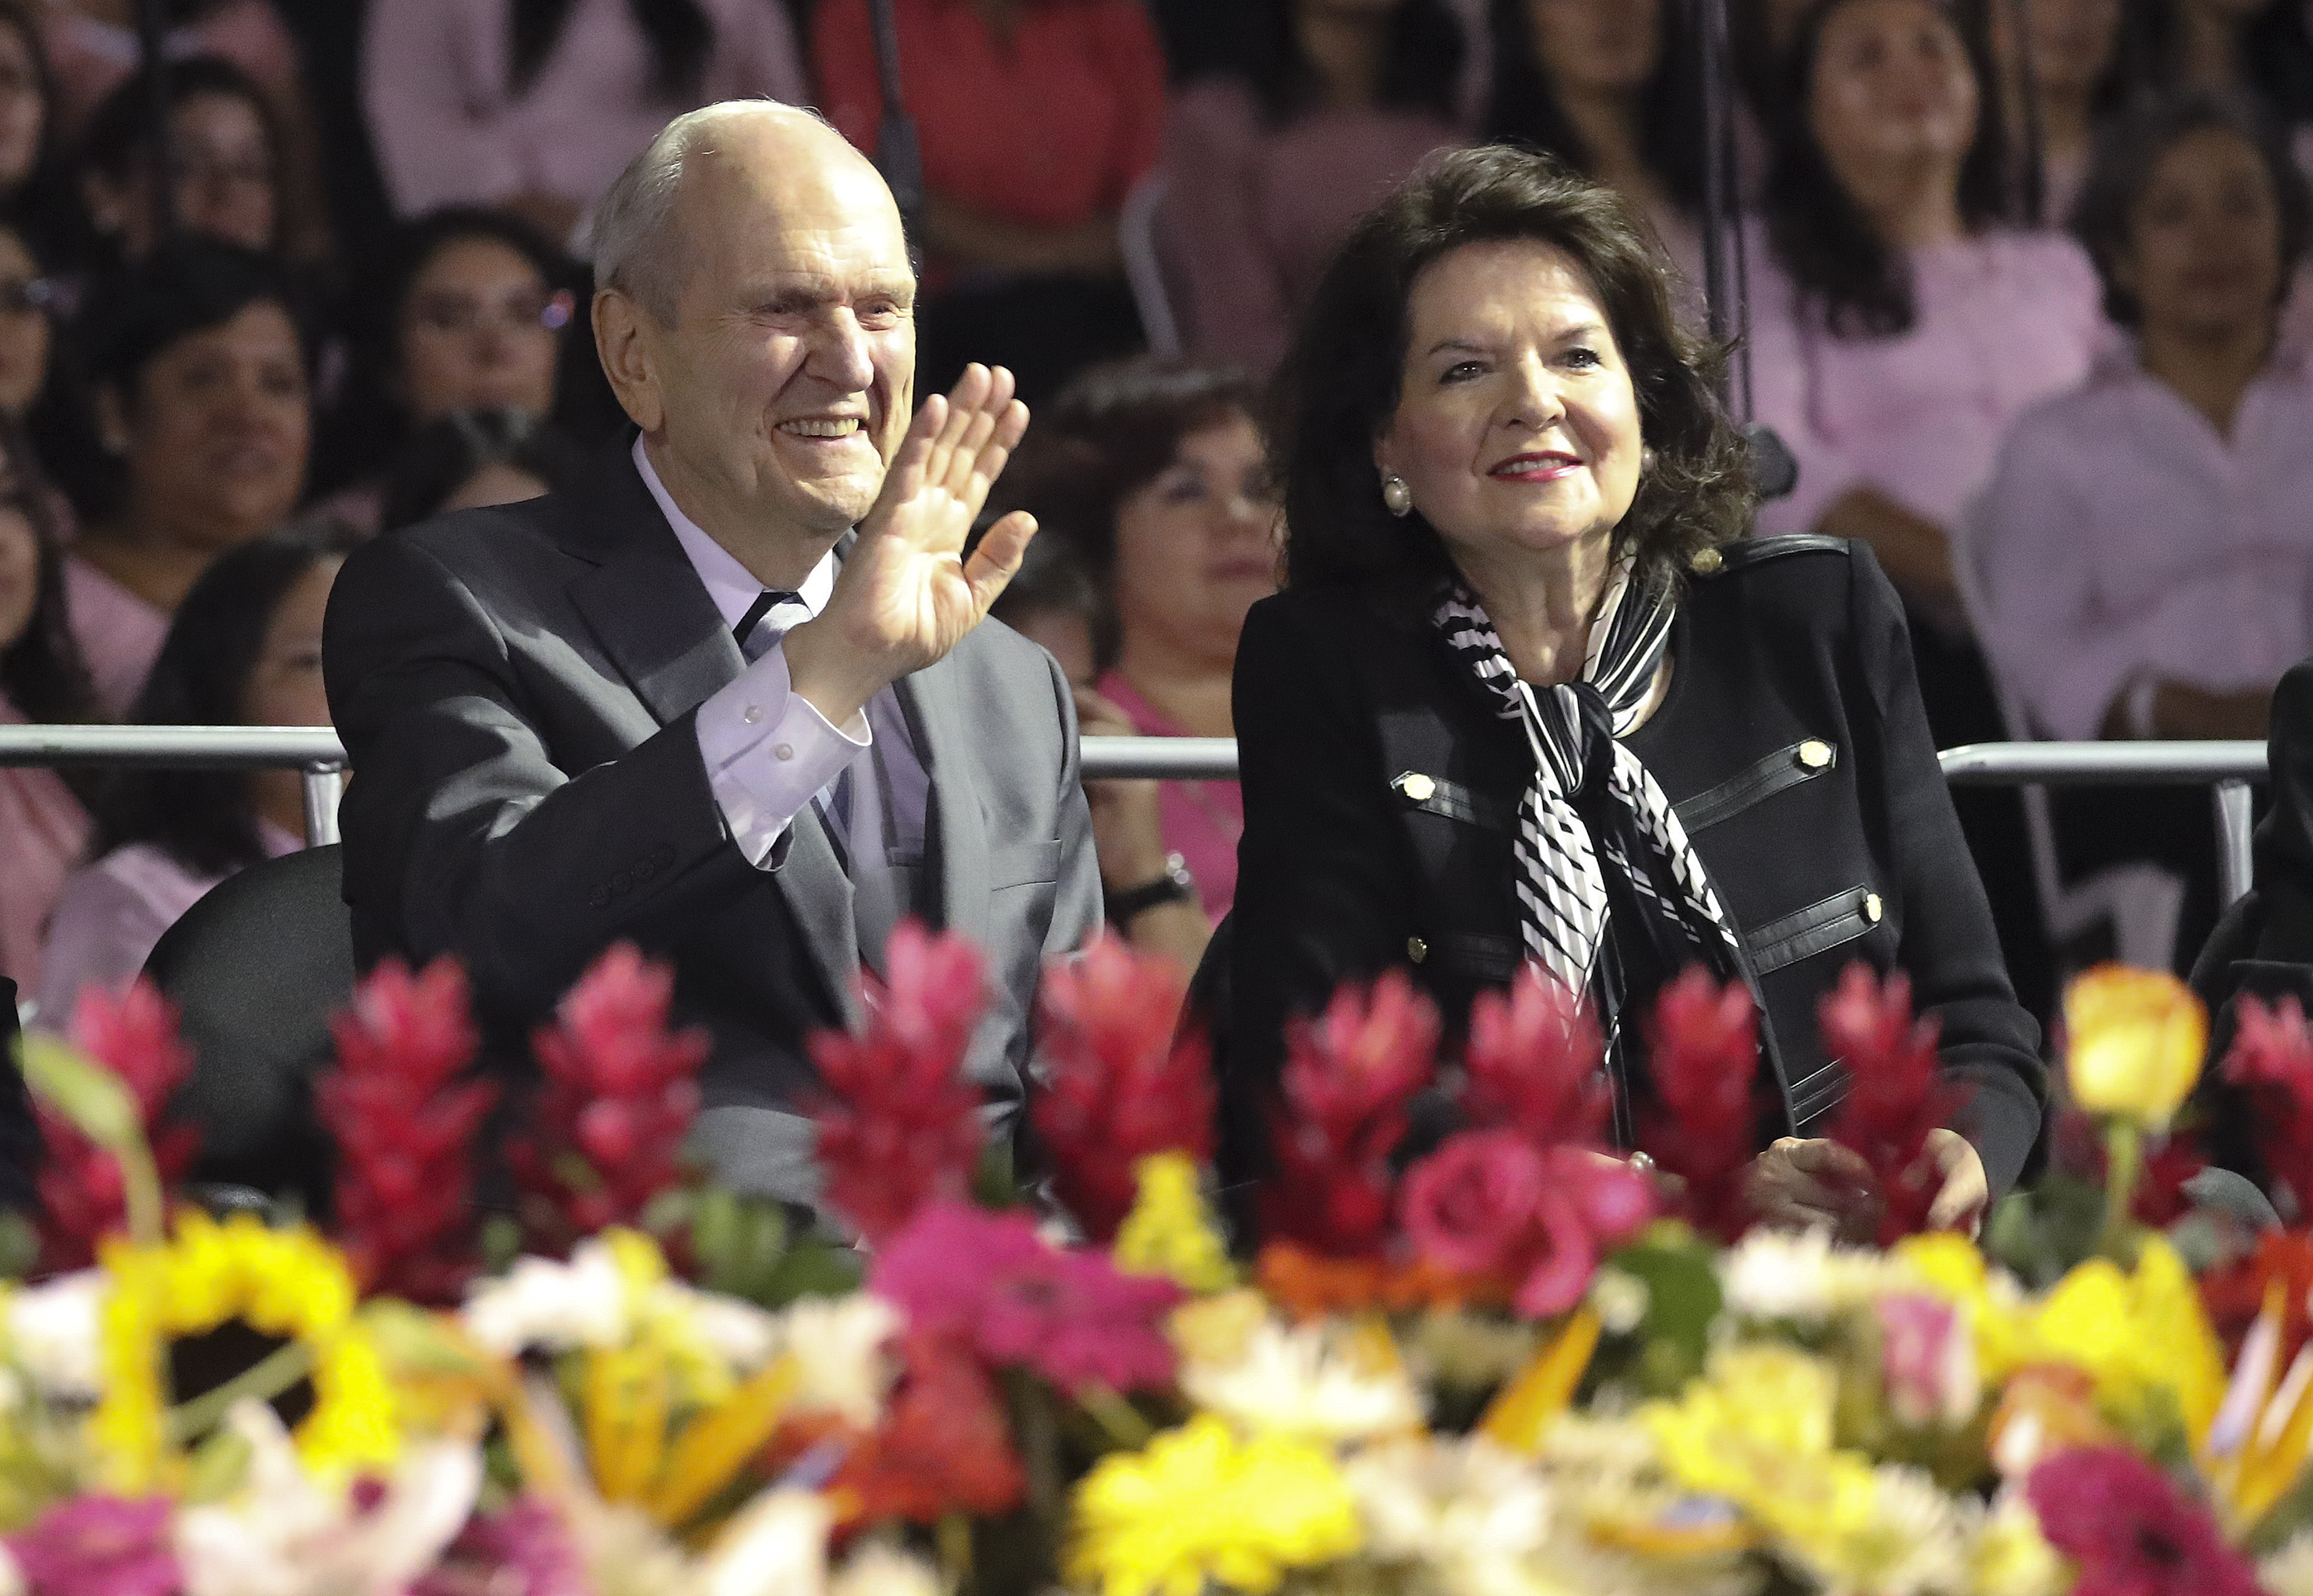 El presidente Russell M. Nelson de La Iglesia de Jesucristo de los Santos de los Últimos Días y su esposa, la hermana Wendy Nelson, saludan a los asistentes antes de un devocional en el estadio Estadio Cementos Progreso en la Ciudad de Guatemala el sábado 24 de agosto de 2019.